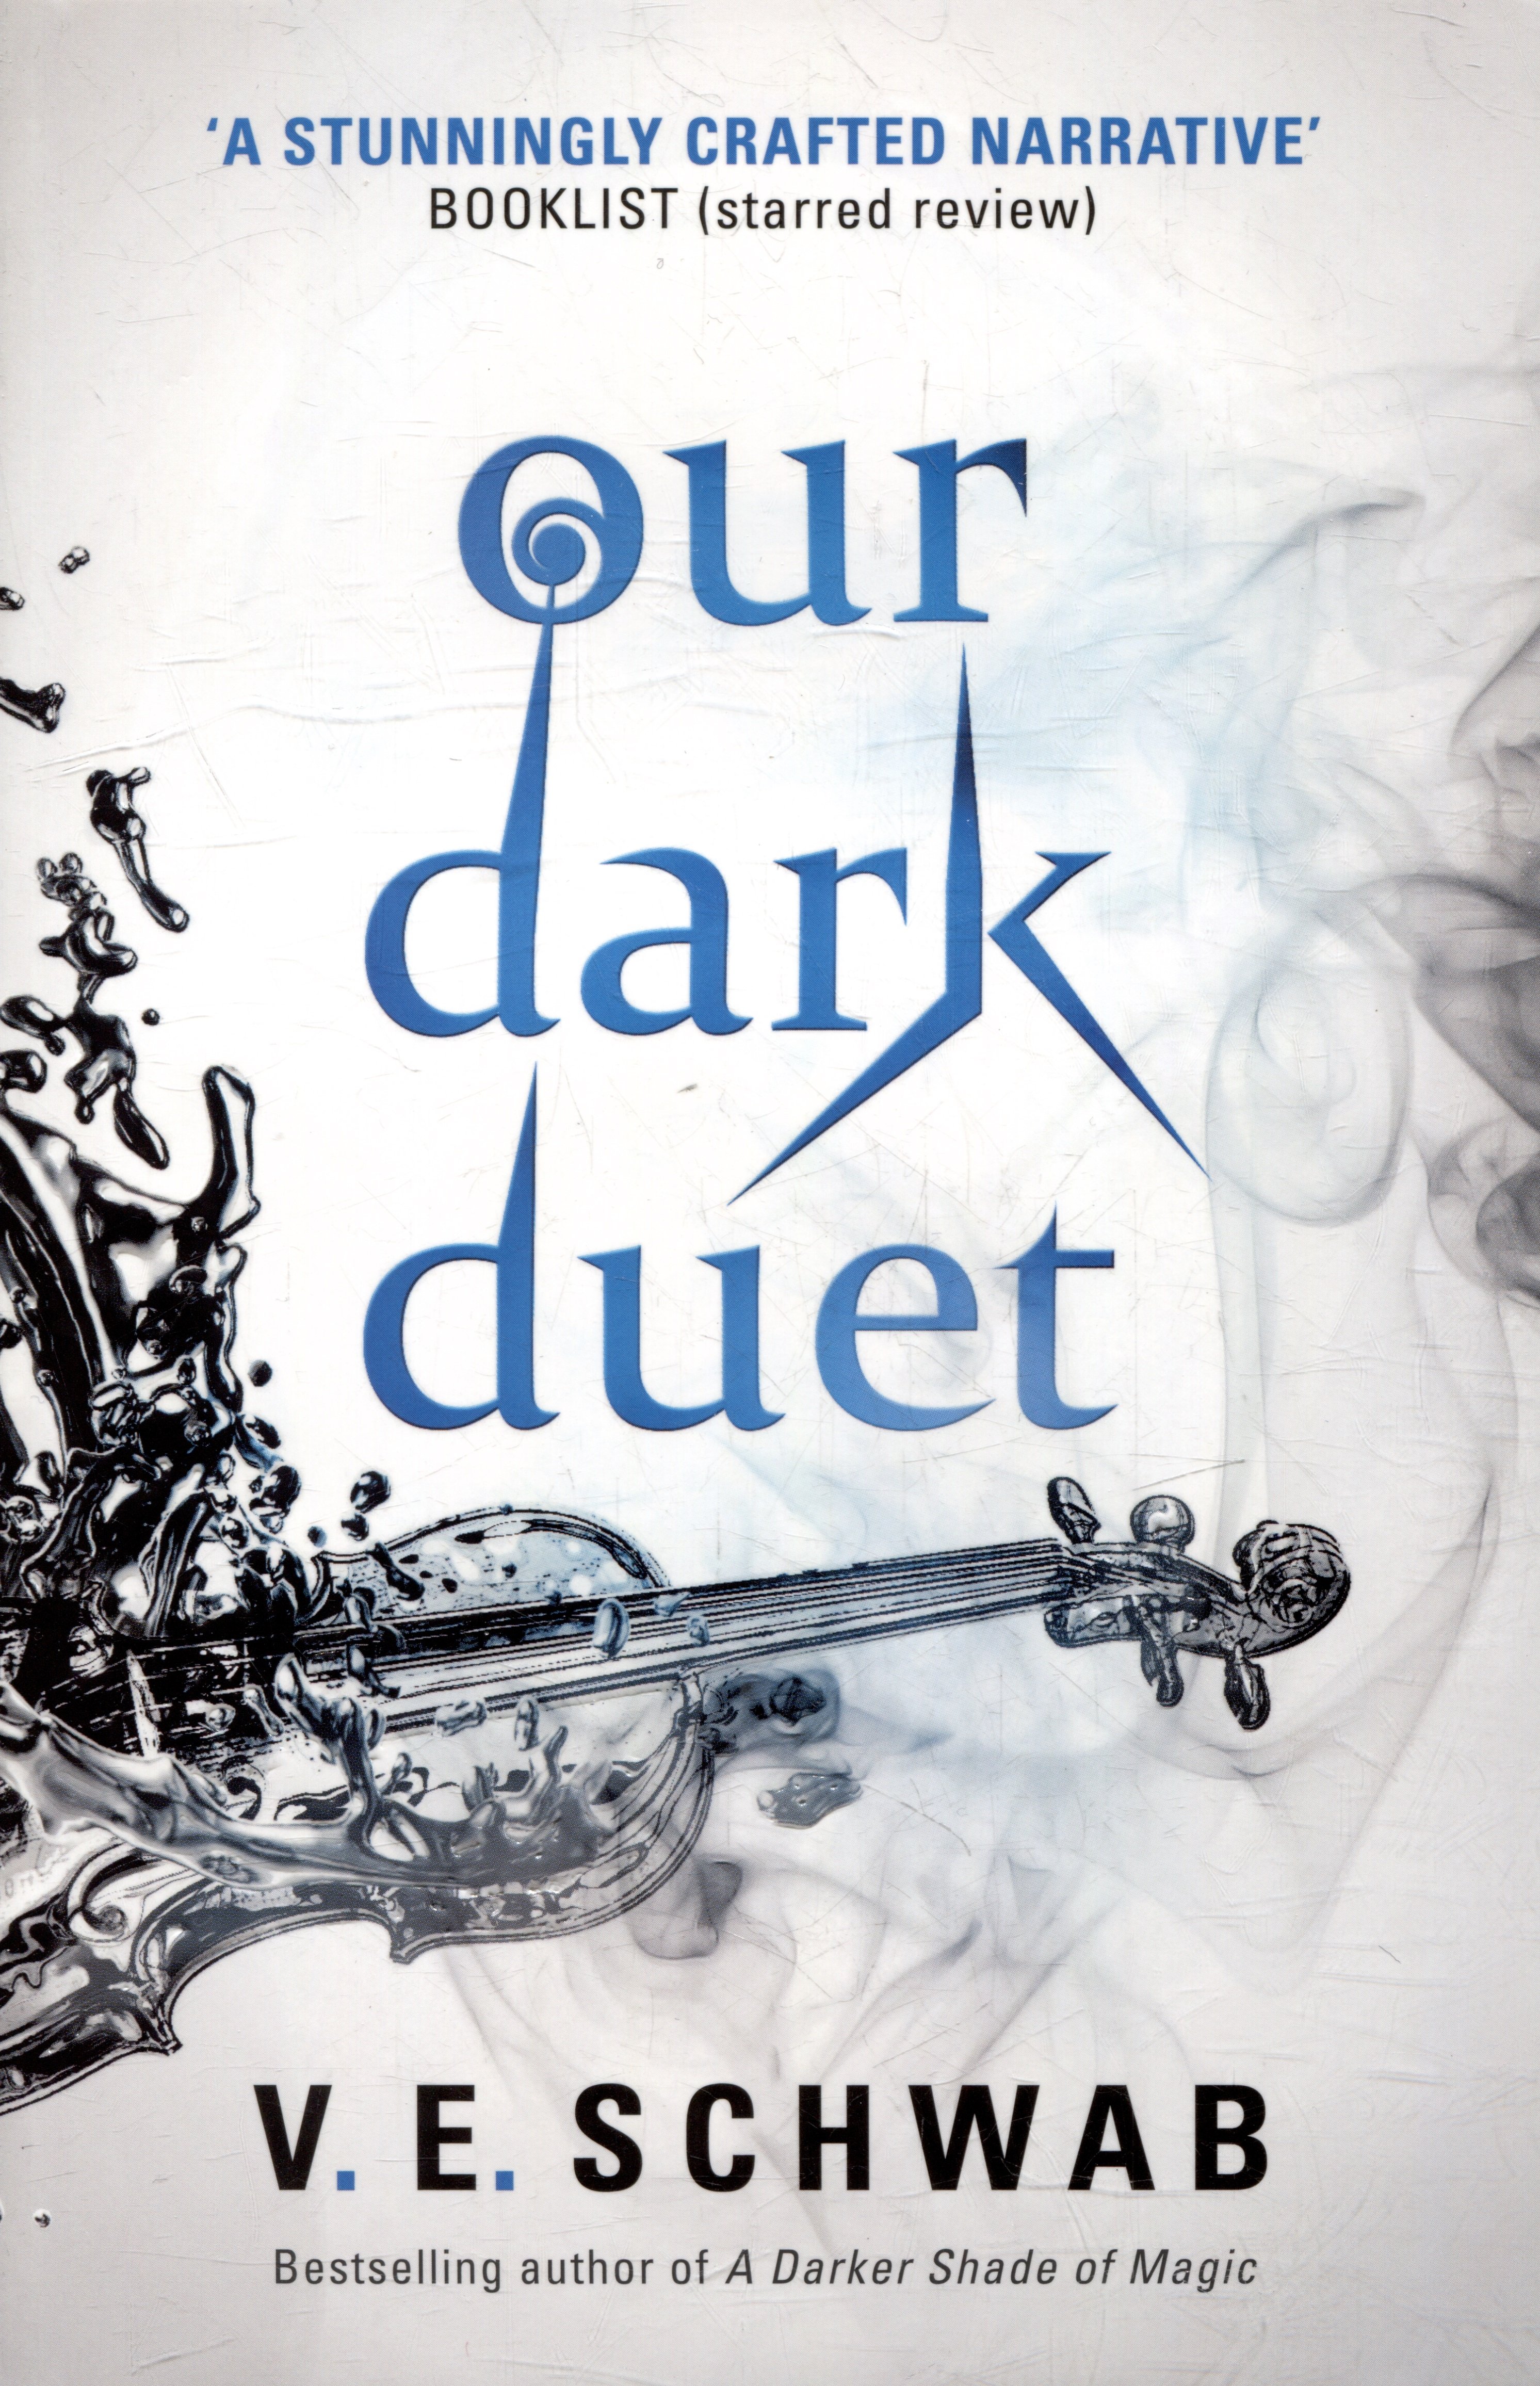 Our Dark Duet